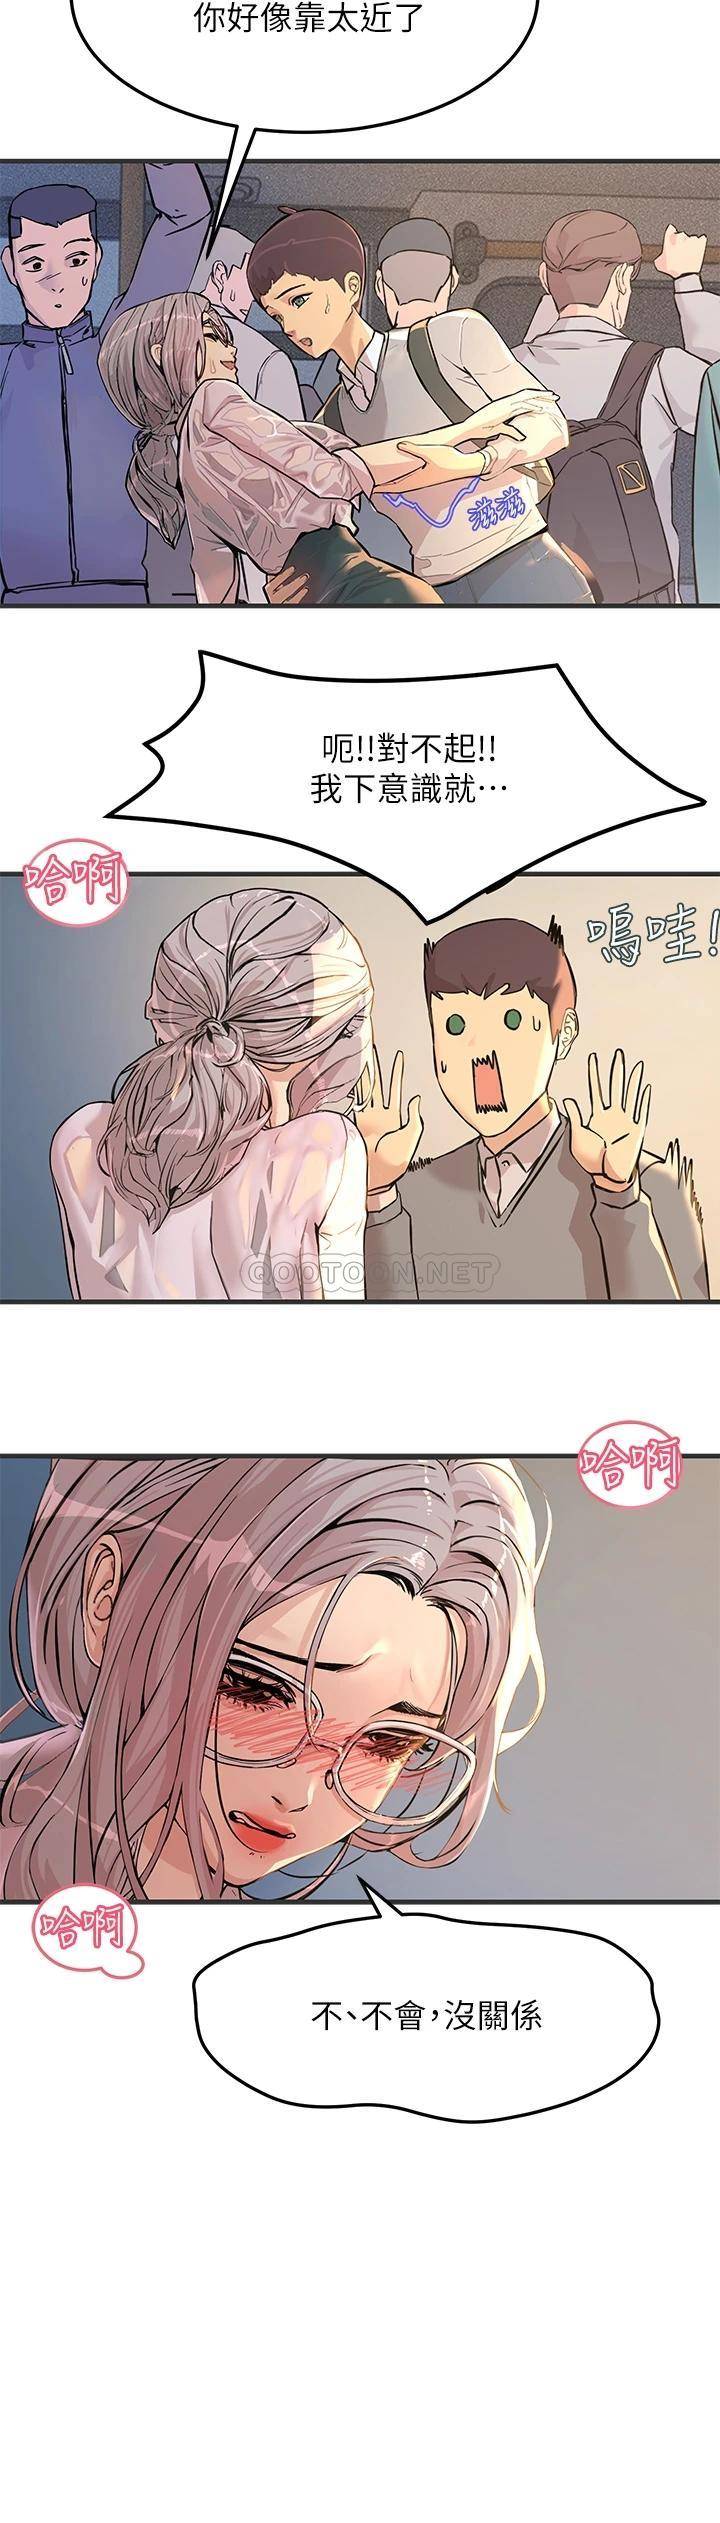 韩国污漫画 觸電大師 第1话 一览无遗的性敏感带 47